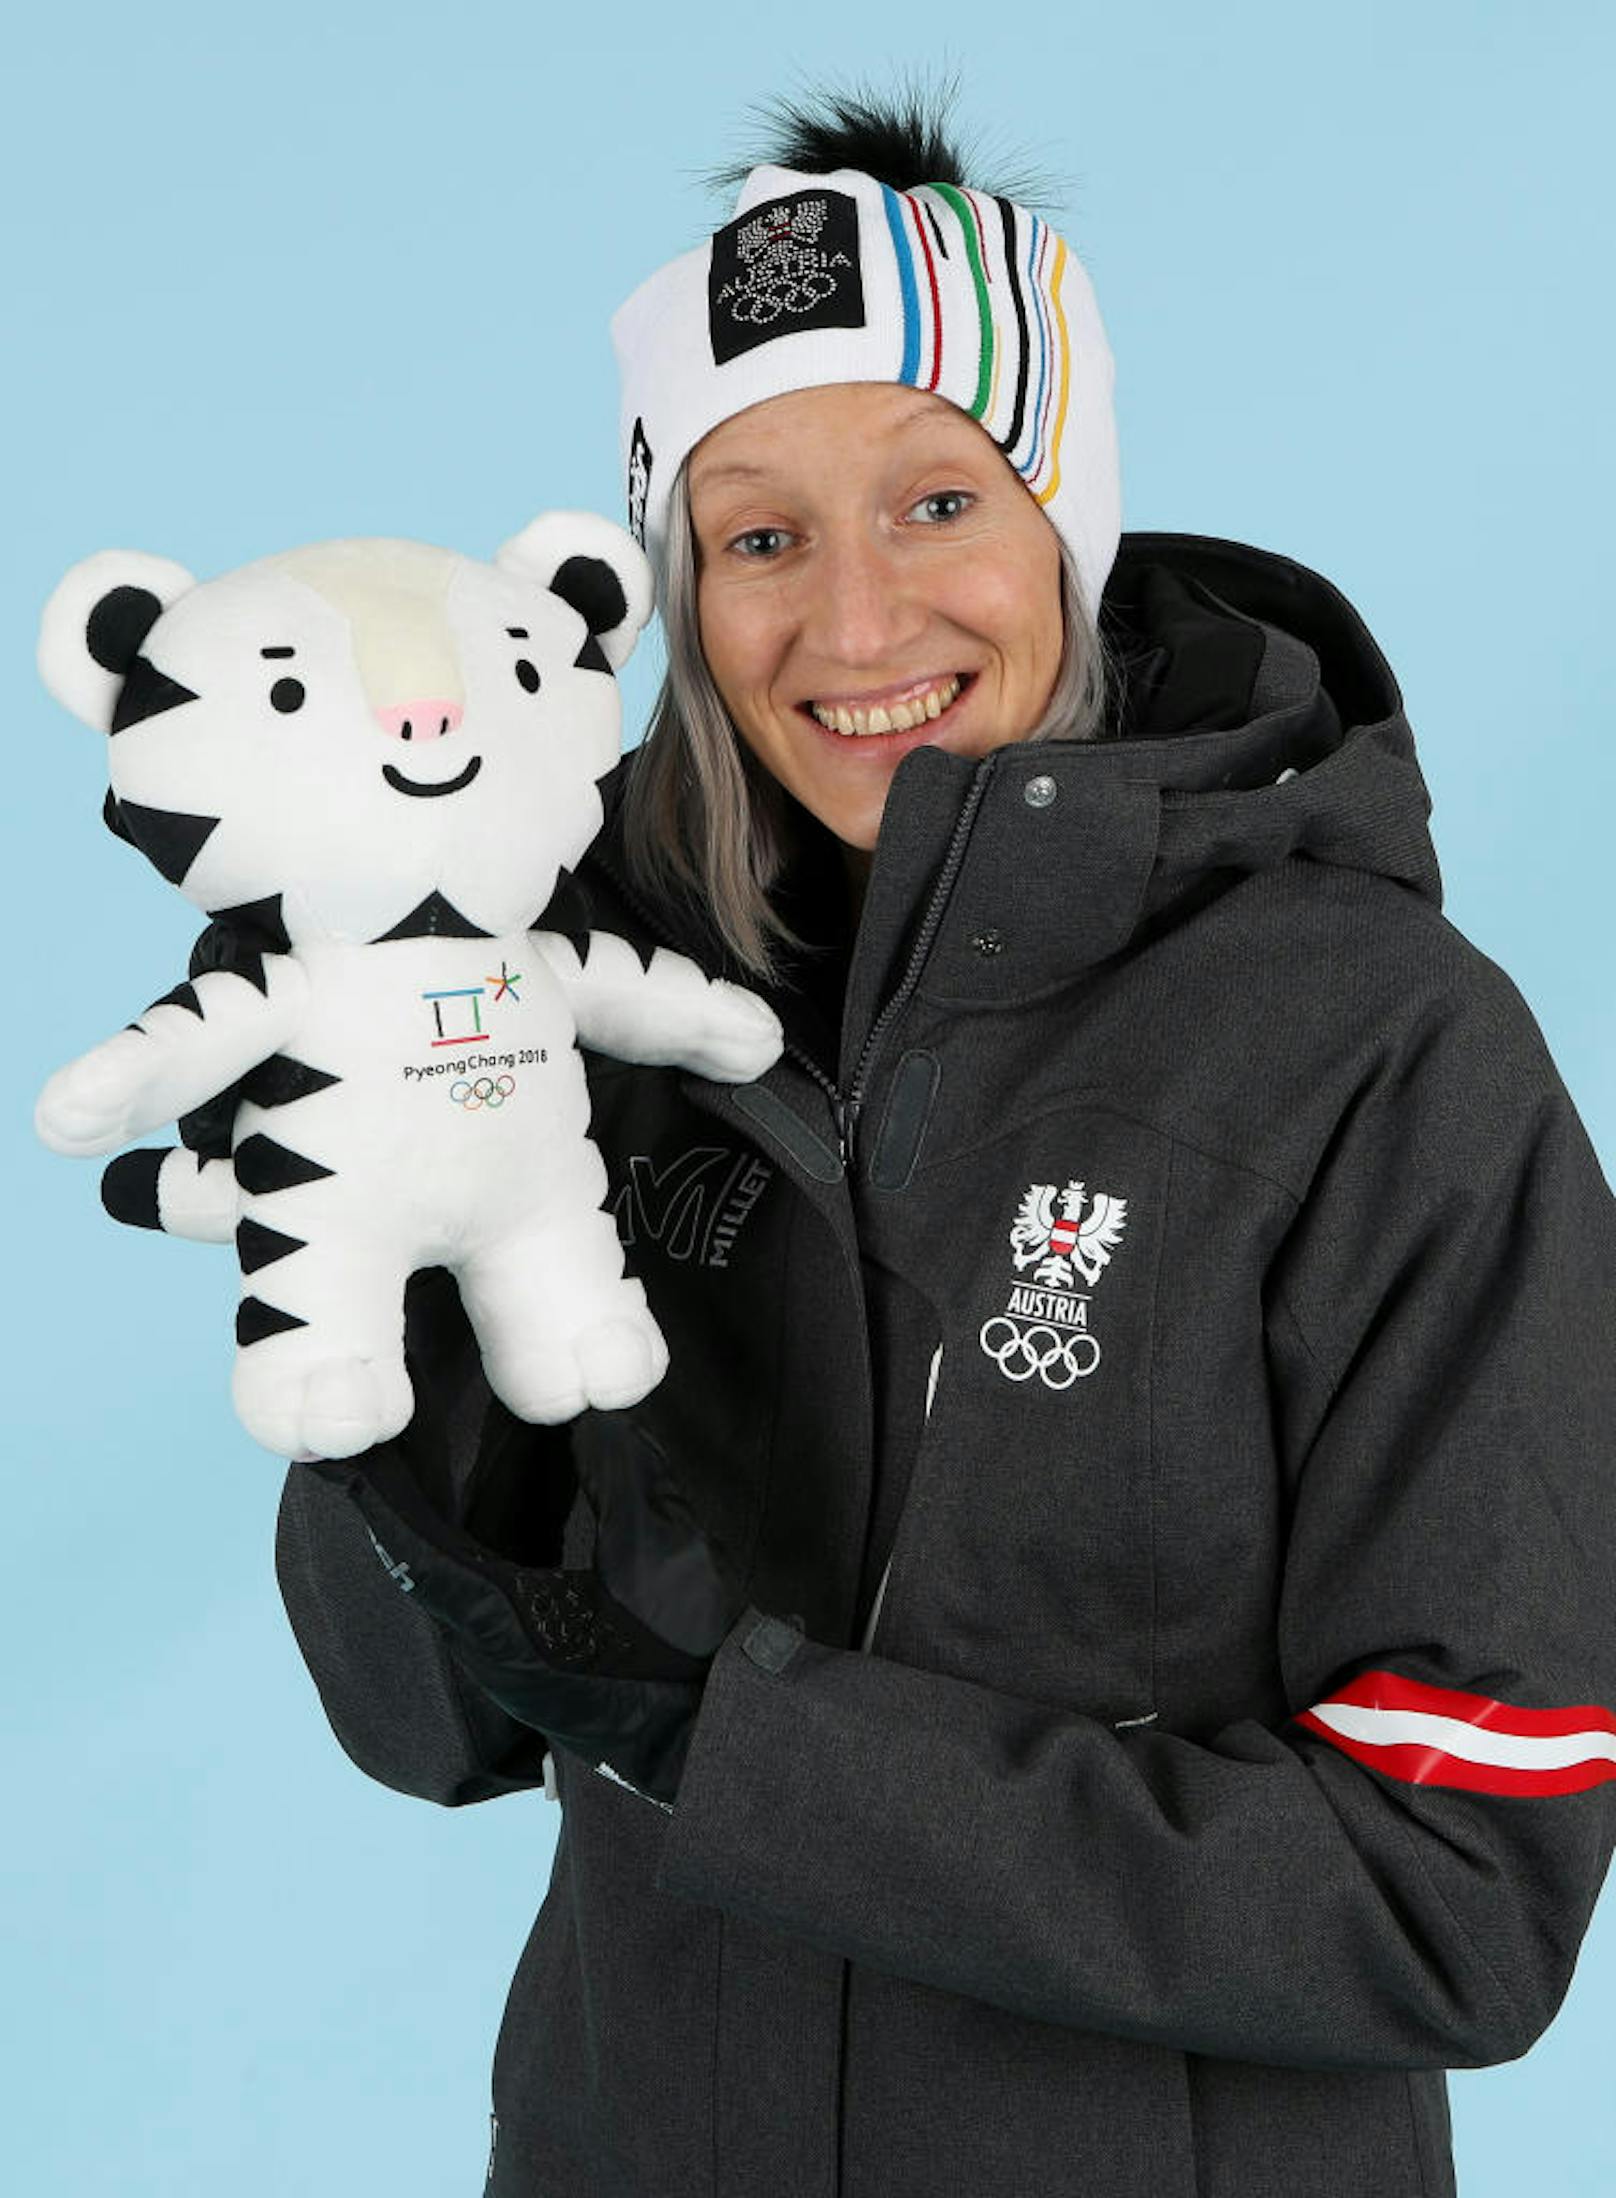 Comeback-Kid Daniela Iraschko-Stolz musste ein Jahr lang pausieren. Die Skispringerin flog auf Anhieb wieder in die Weltspitze.